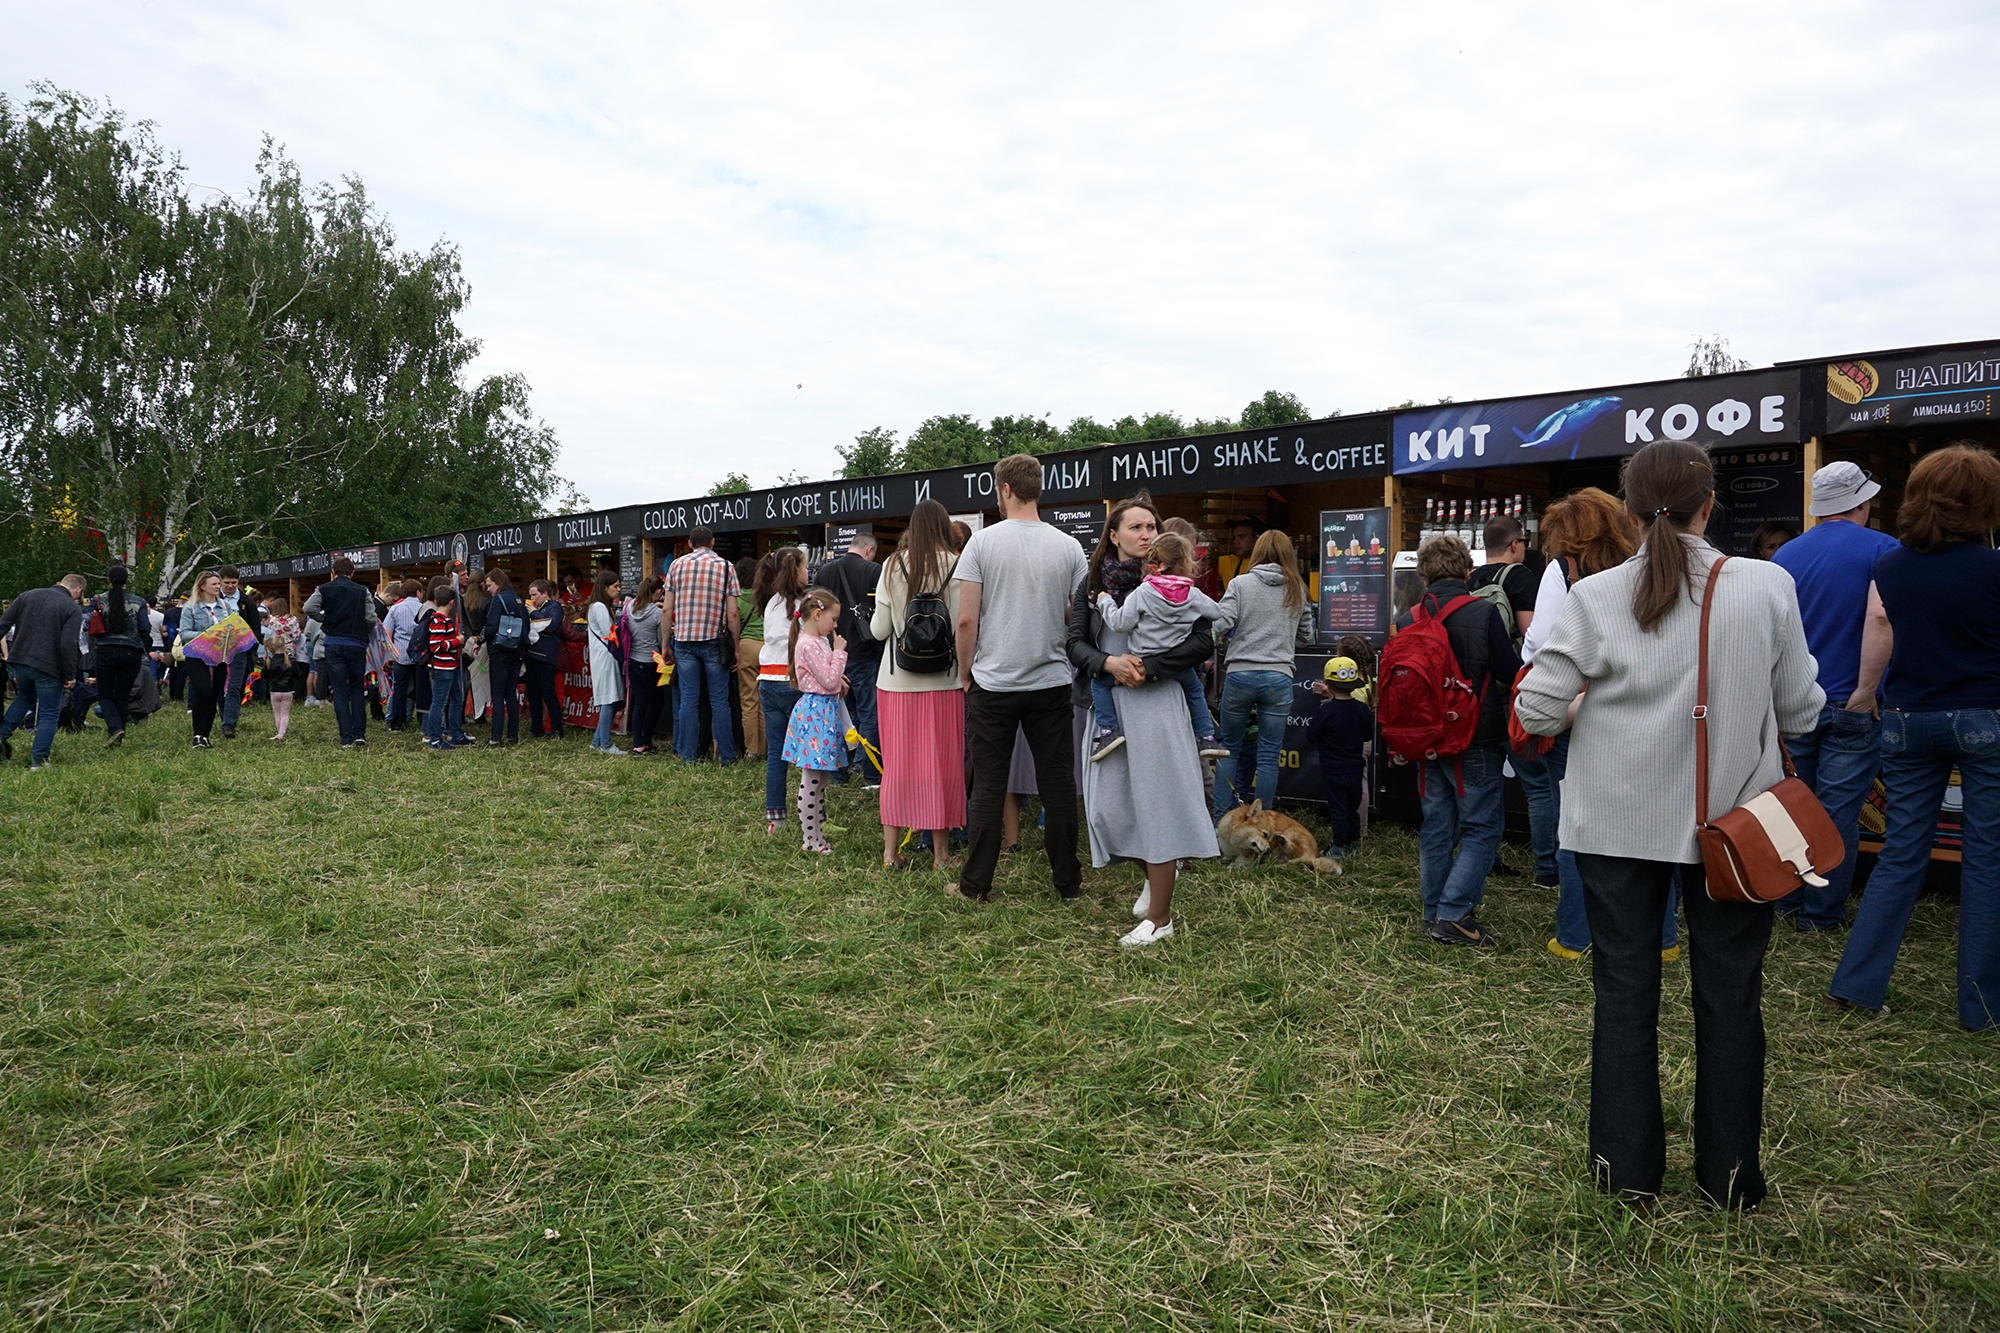 Фотографии фестиваля воздушных змеев «Пестрое Небо» | Вне рубрик Konstantin Orekhov | OKEBLOG